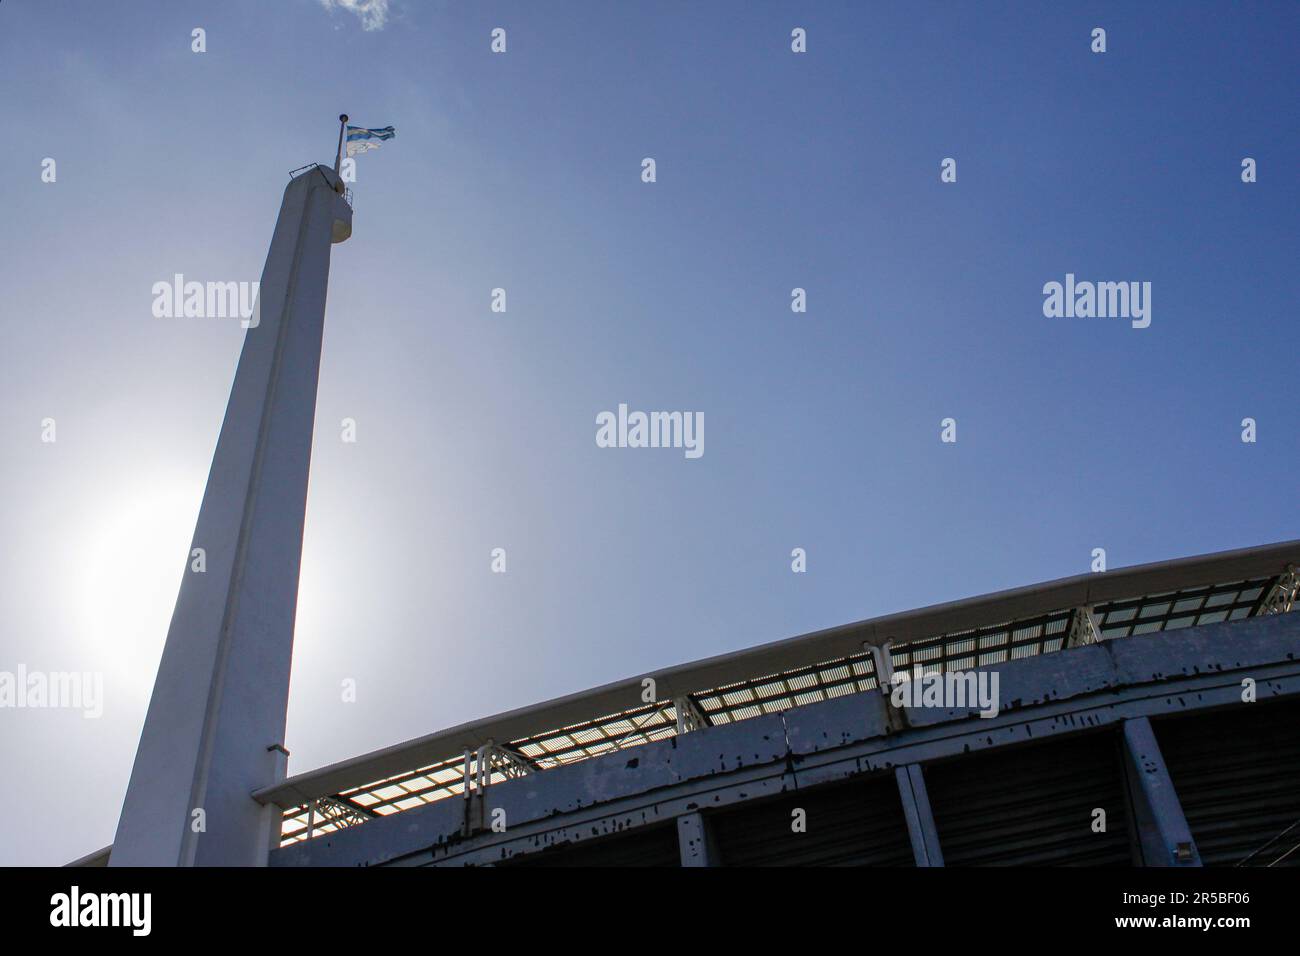 Avellaneda, Argentine, 16, mars 2011.vue du mât du stade Presidente Peron du Racing Club contre la lumière. Crédit: Fabideciria. Banque D'Images